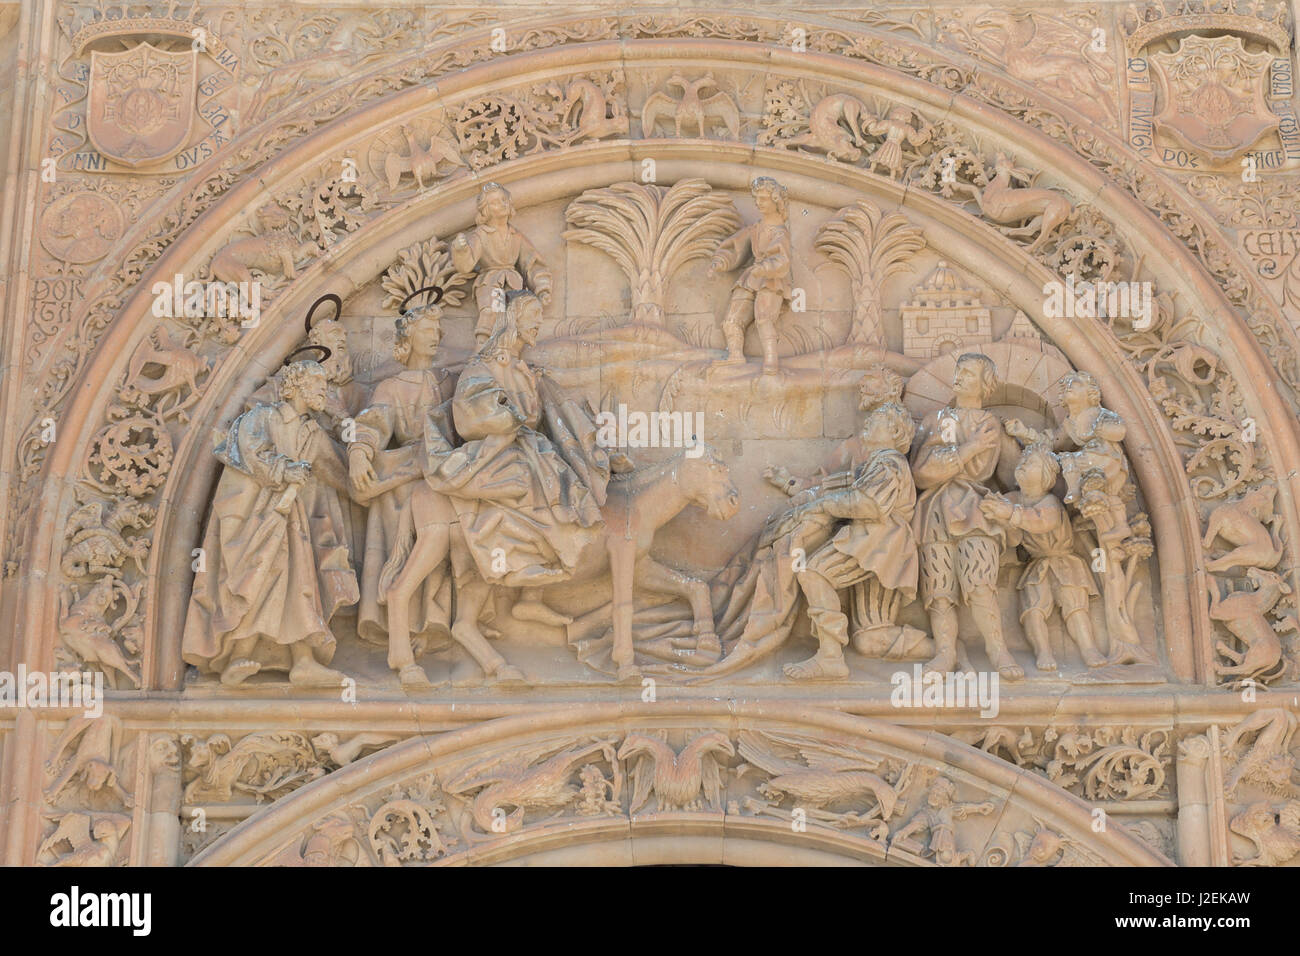 L'Espagne, Salamanque, la cathédrale, le relief sculpture de dimanche des Rameaux Banque D'Images